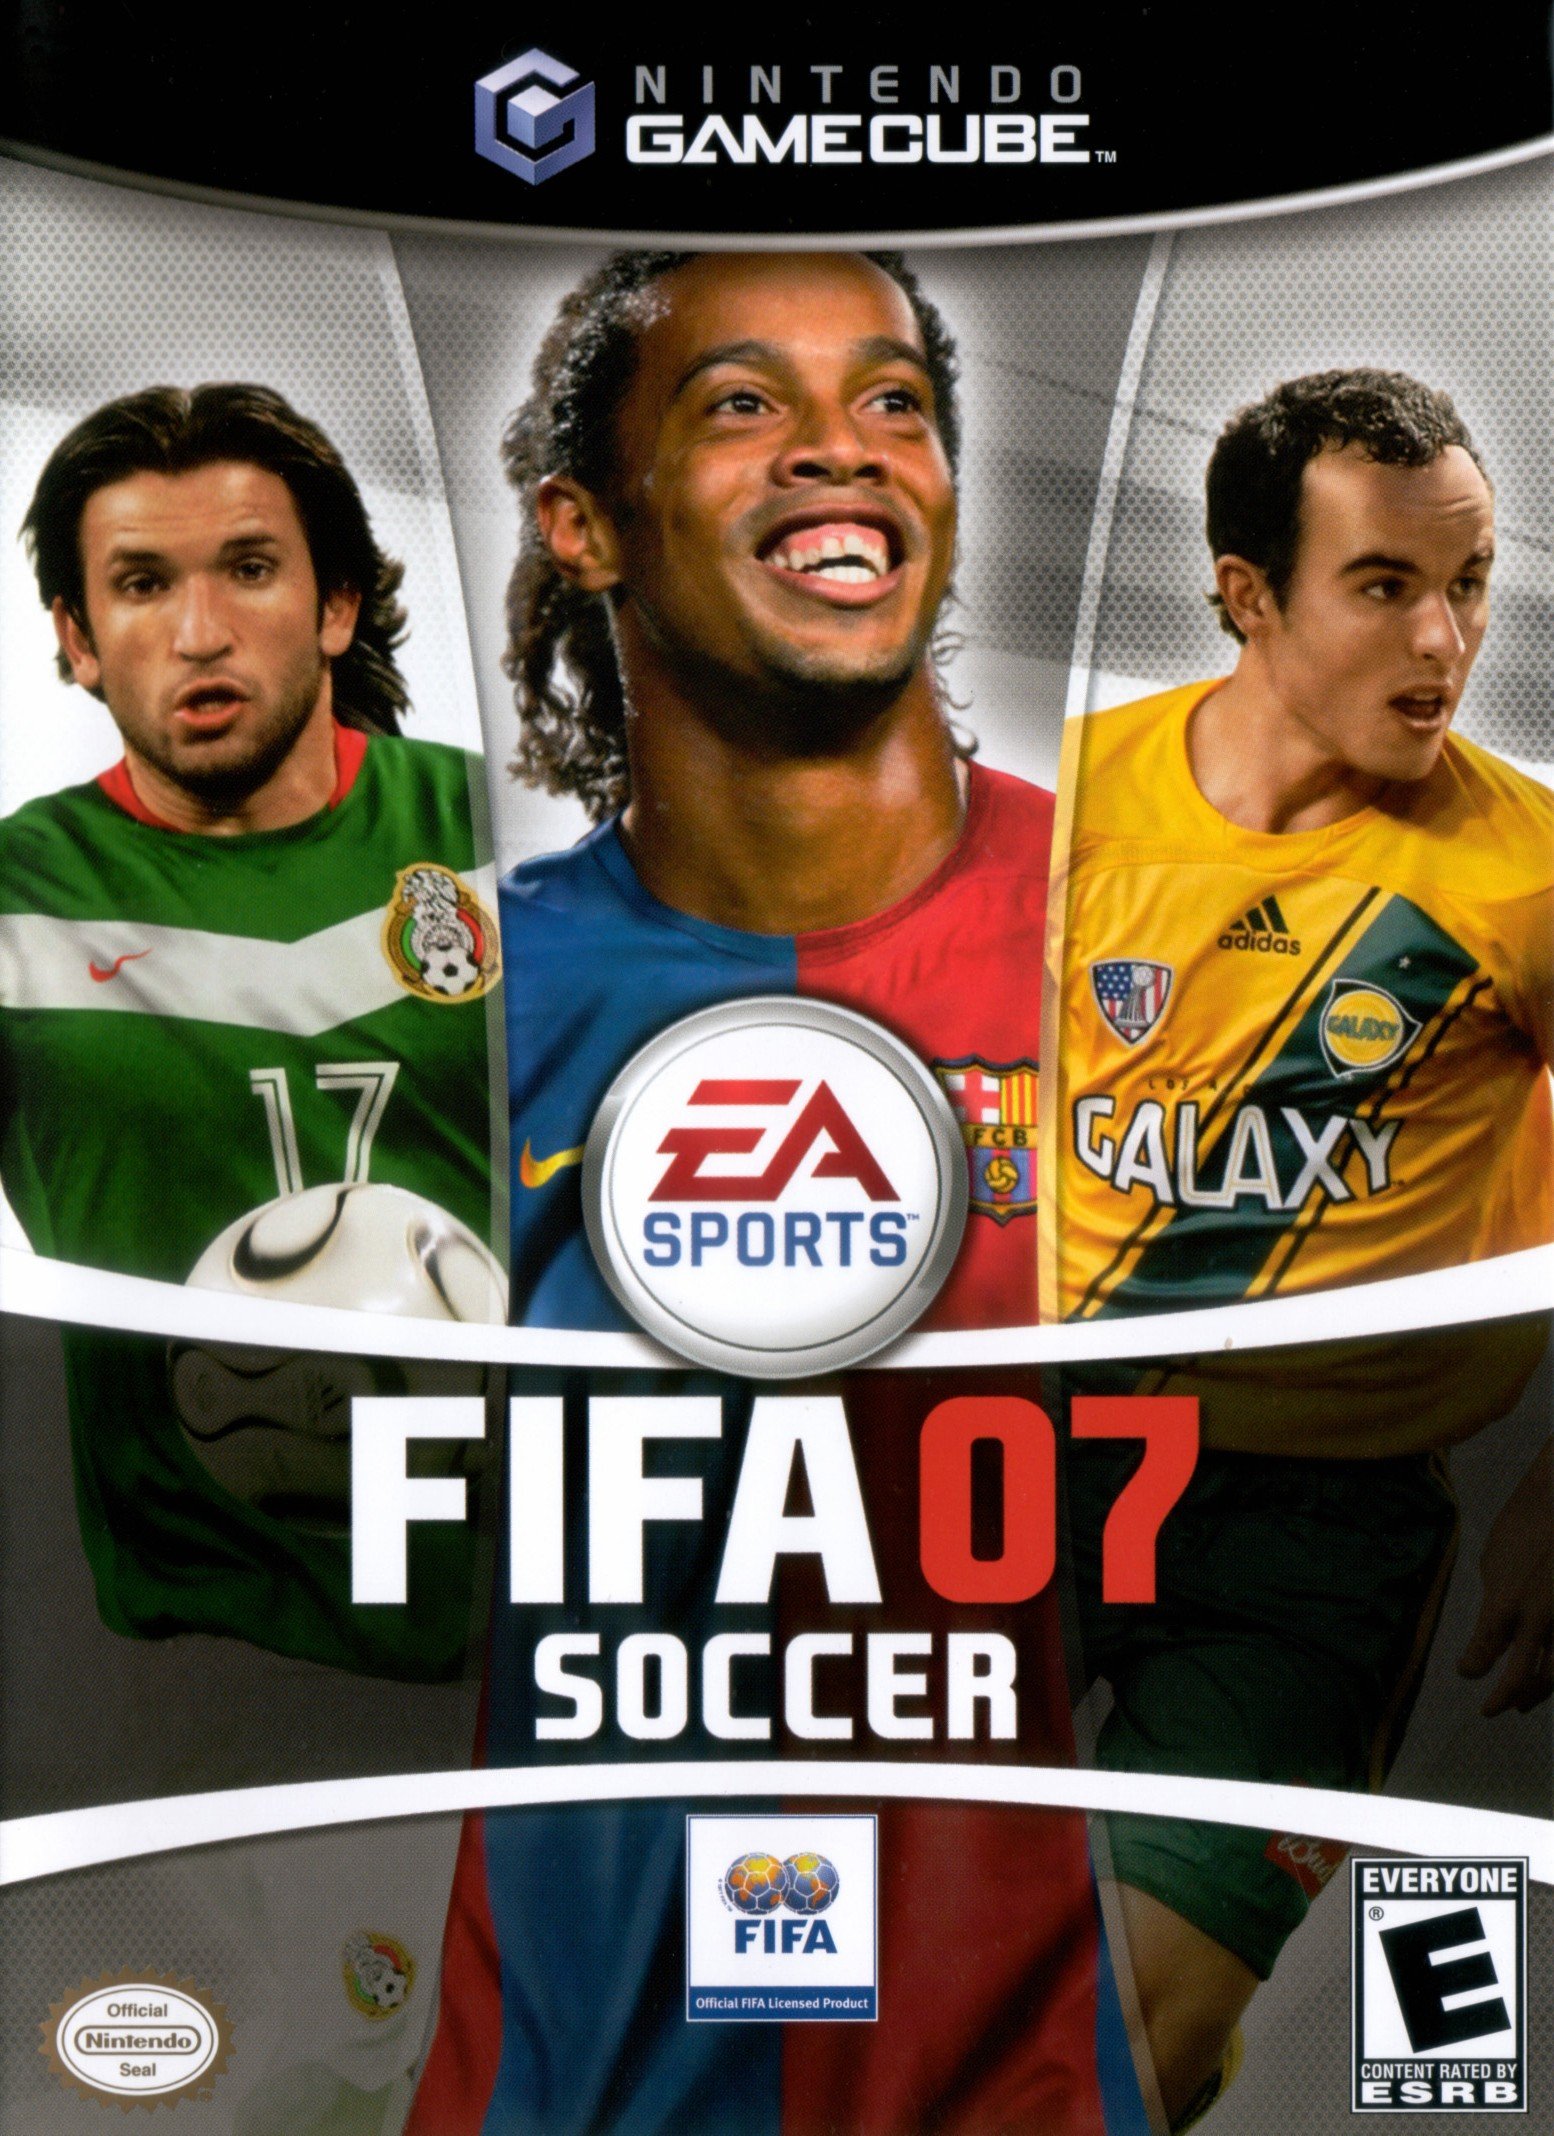 FIFA 07 Soccer Фото